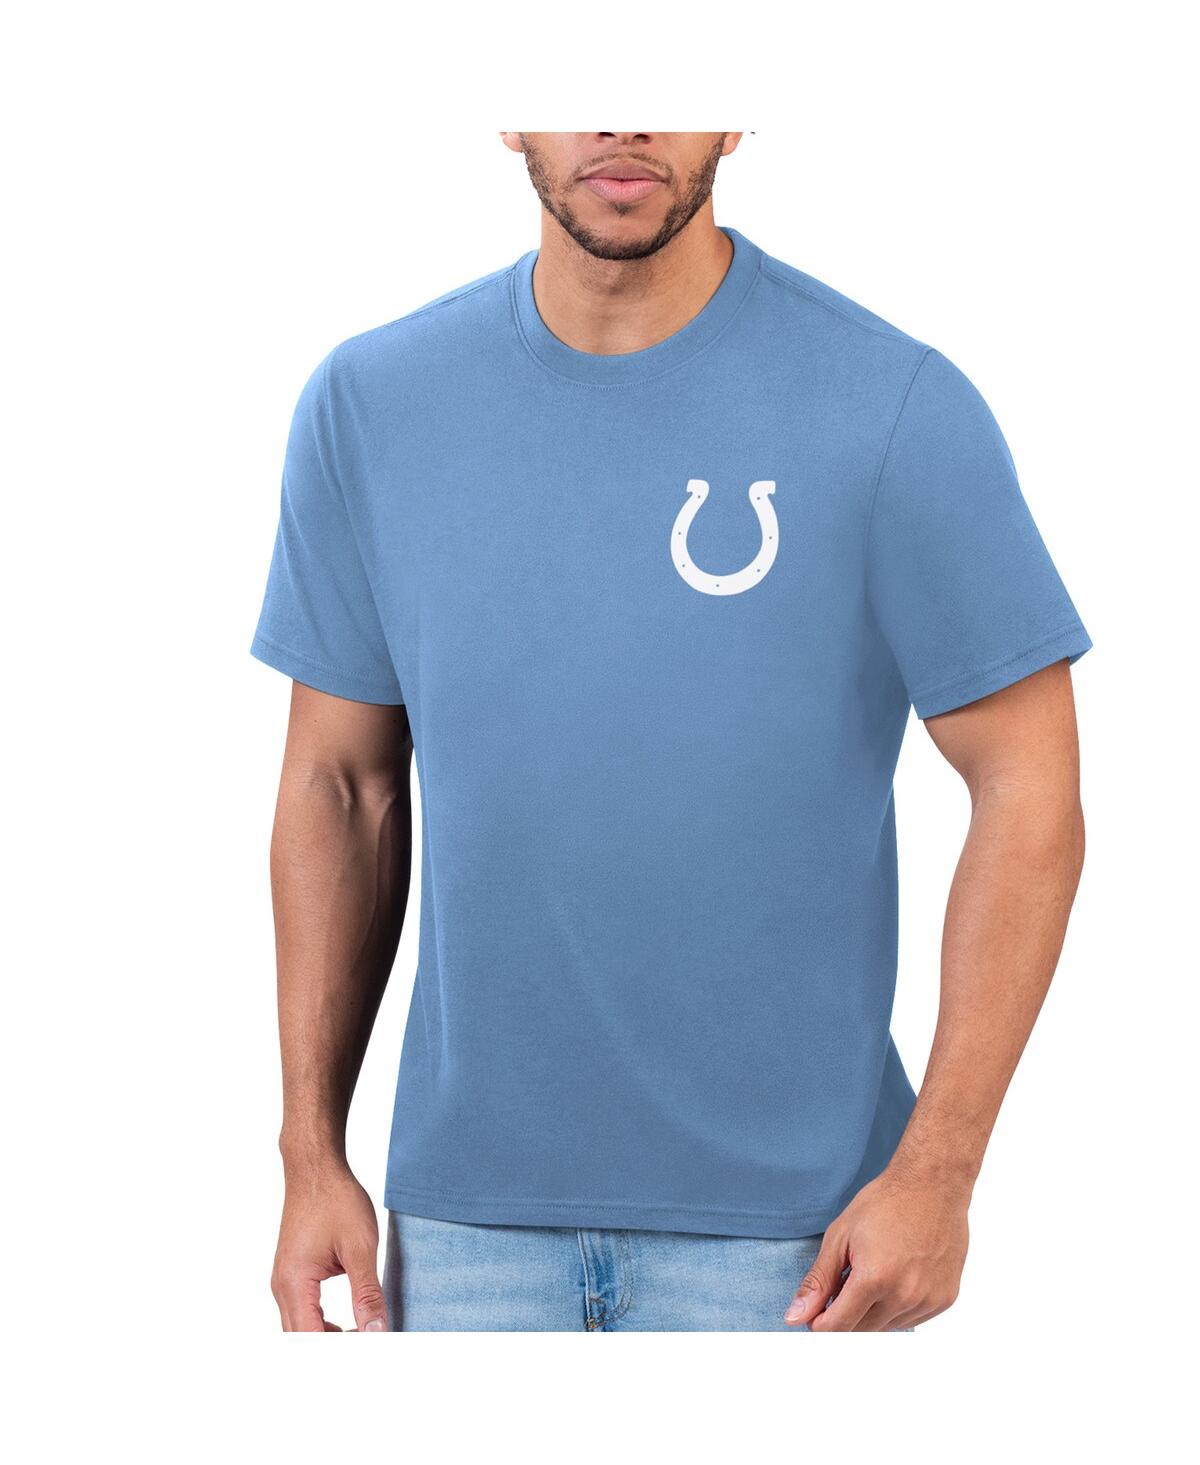 Men's Margaritaville Blue Indianapolis Colts T-shirt - Blue